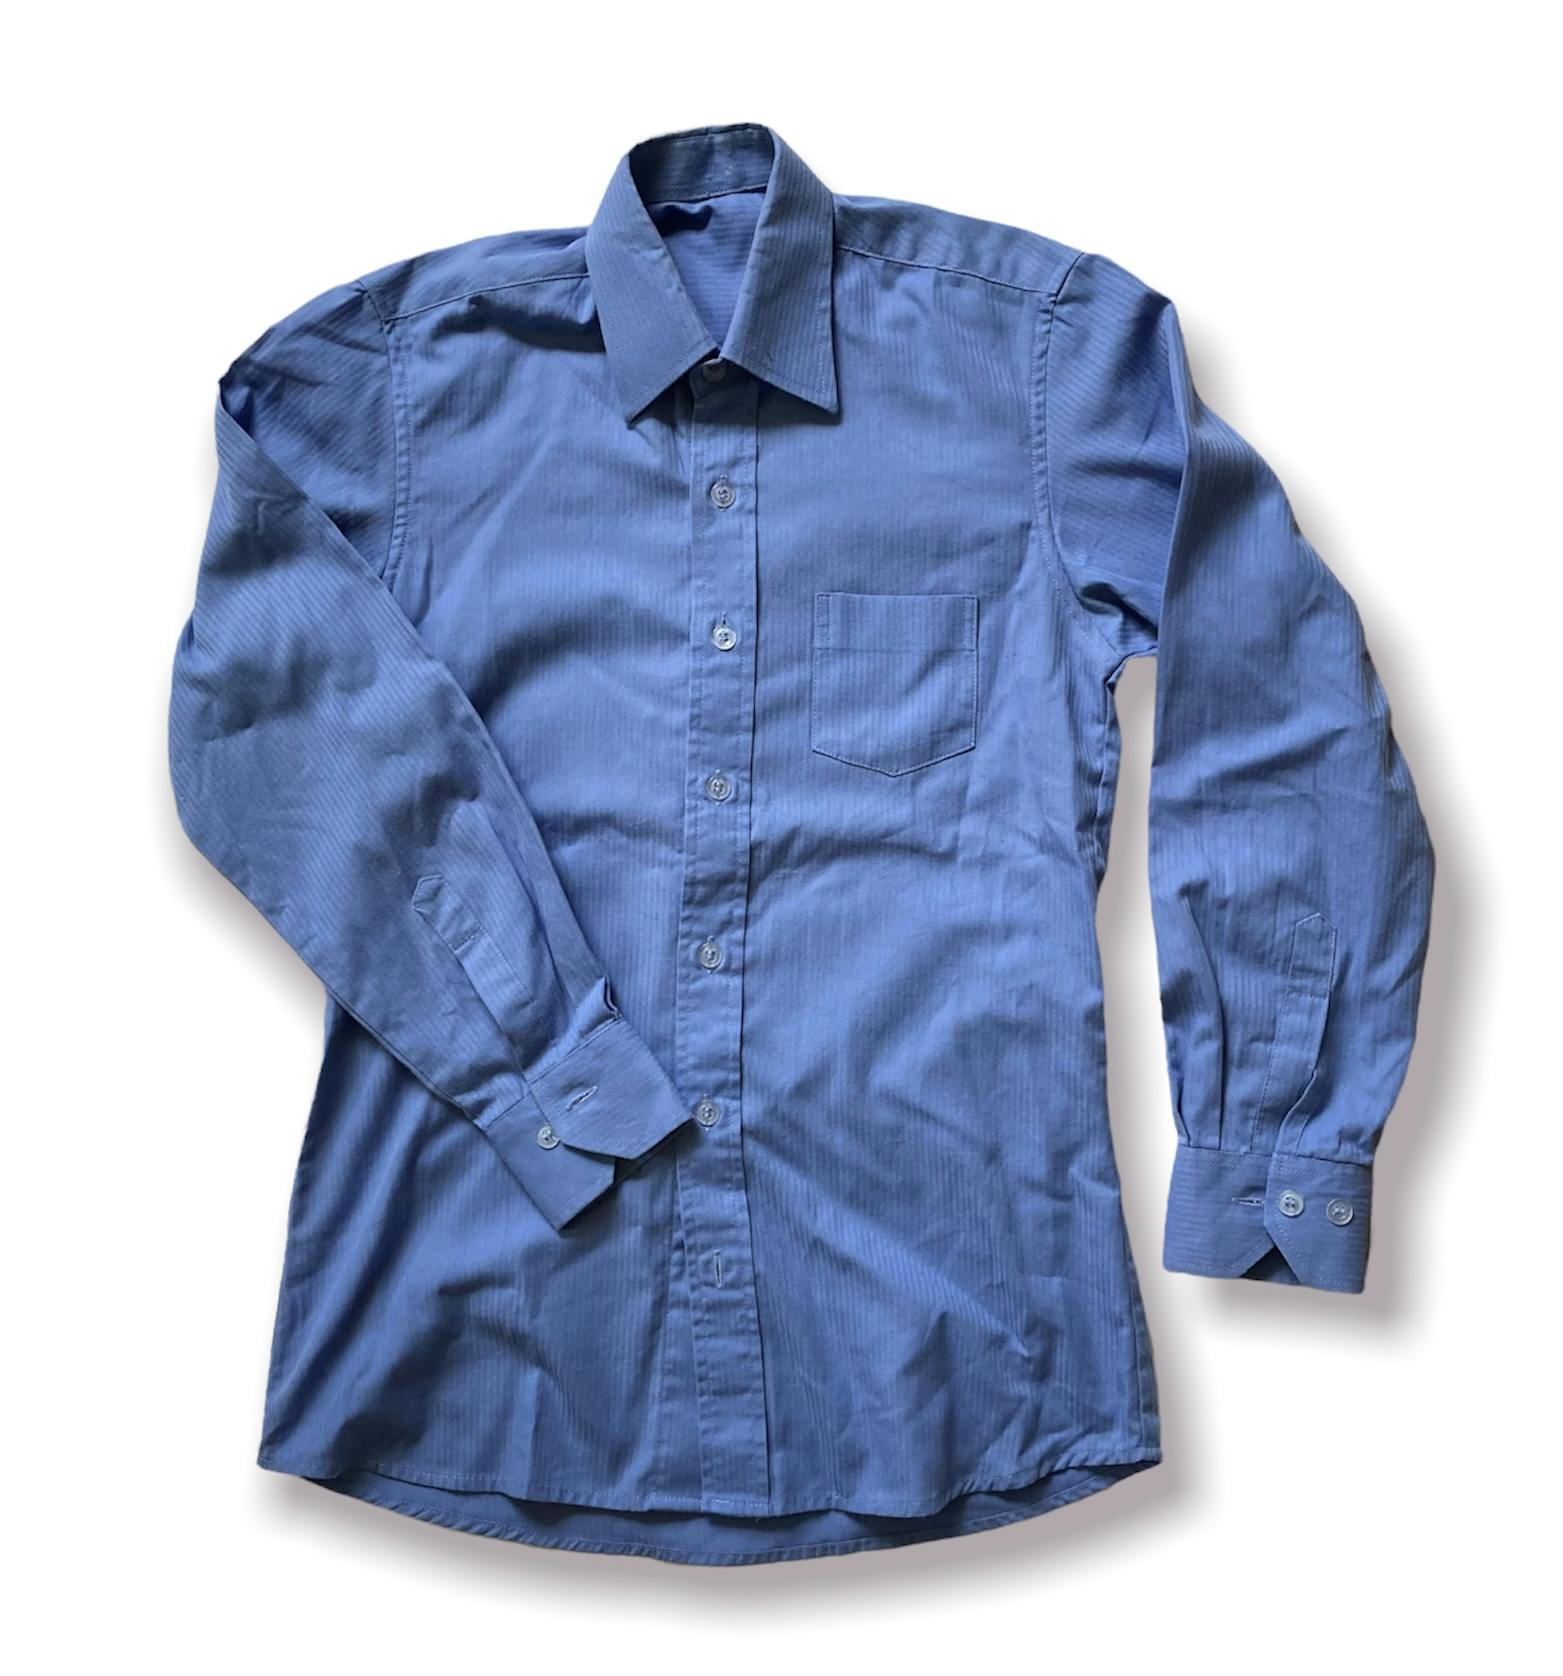 Blå skjorta stl 152 - Lilla grodans ekobutik